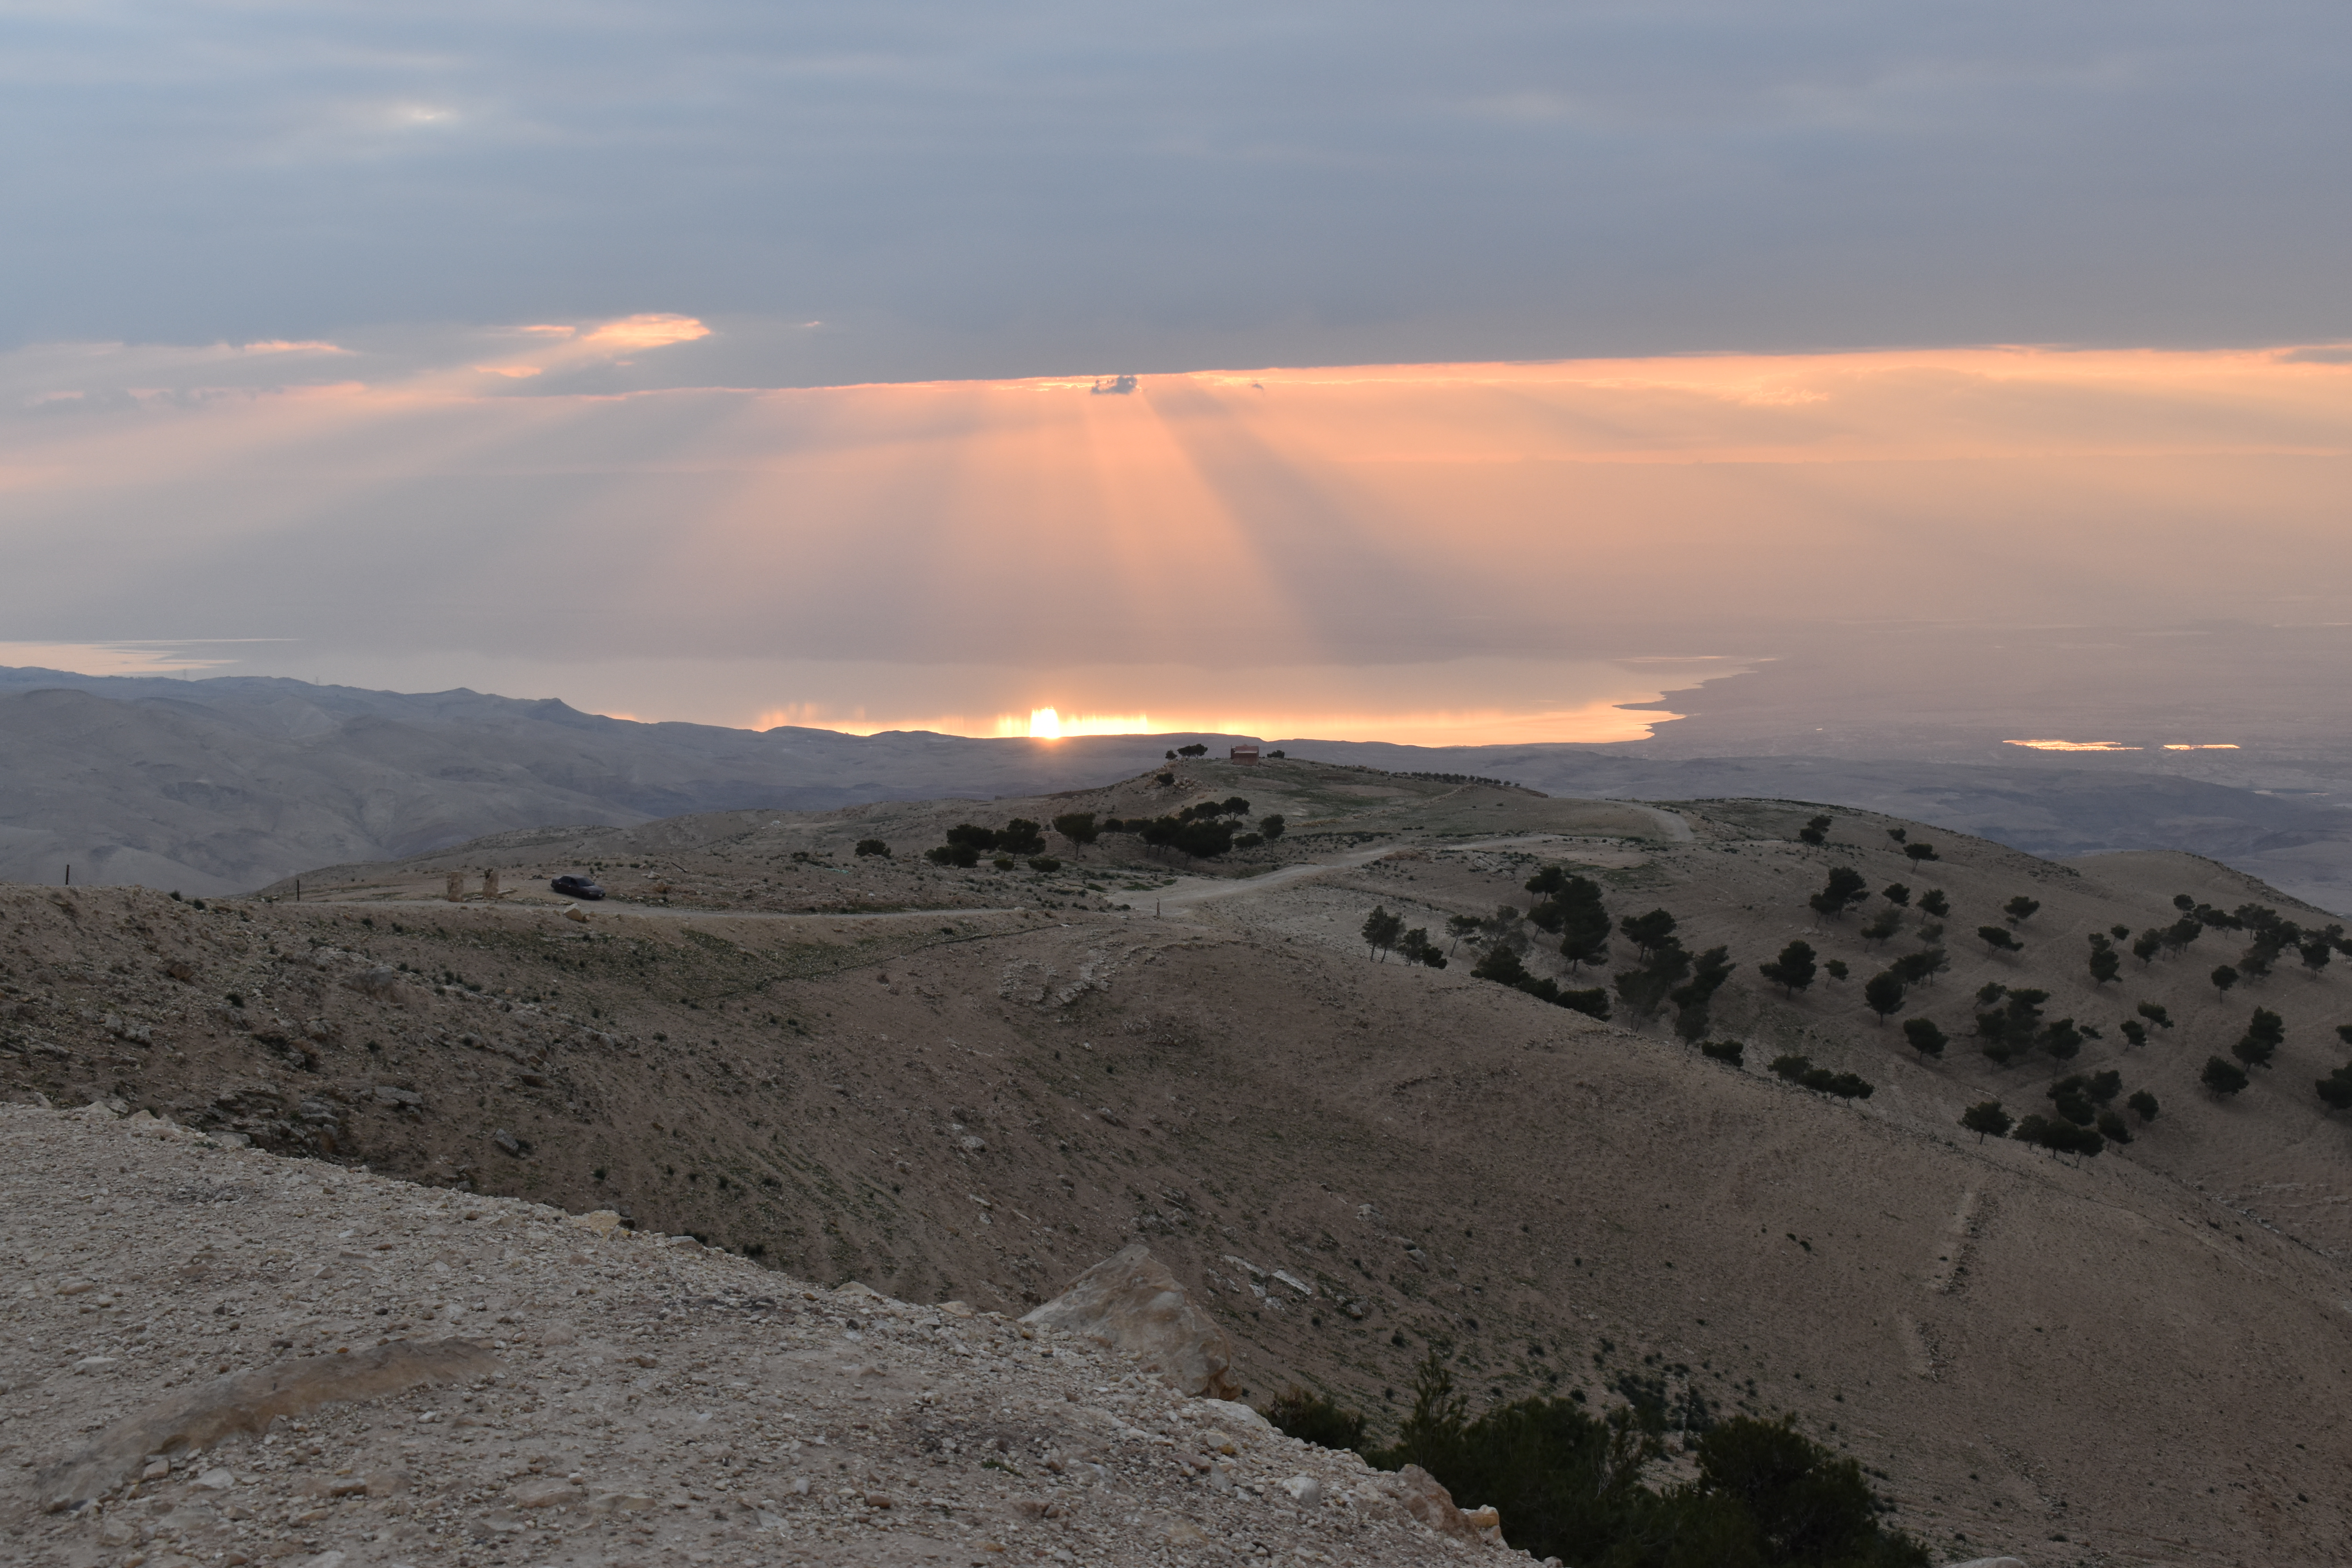 Sunset on the Dead Sea seen fromn Mt. Nebo